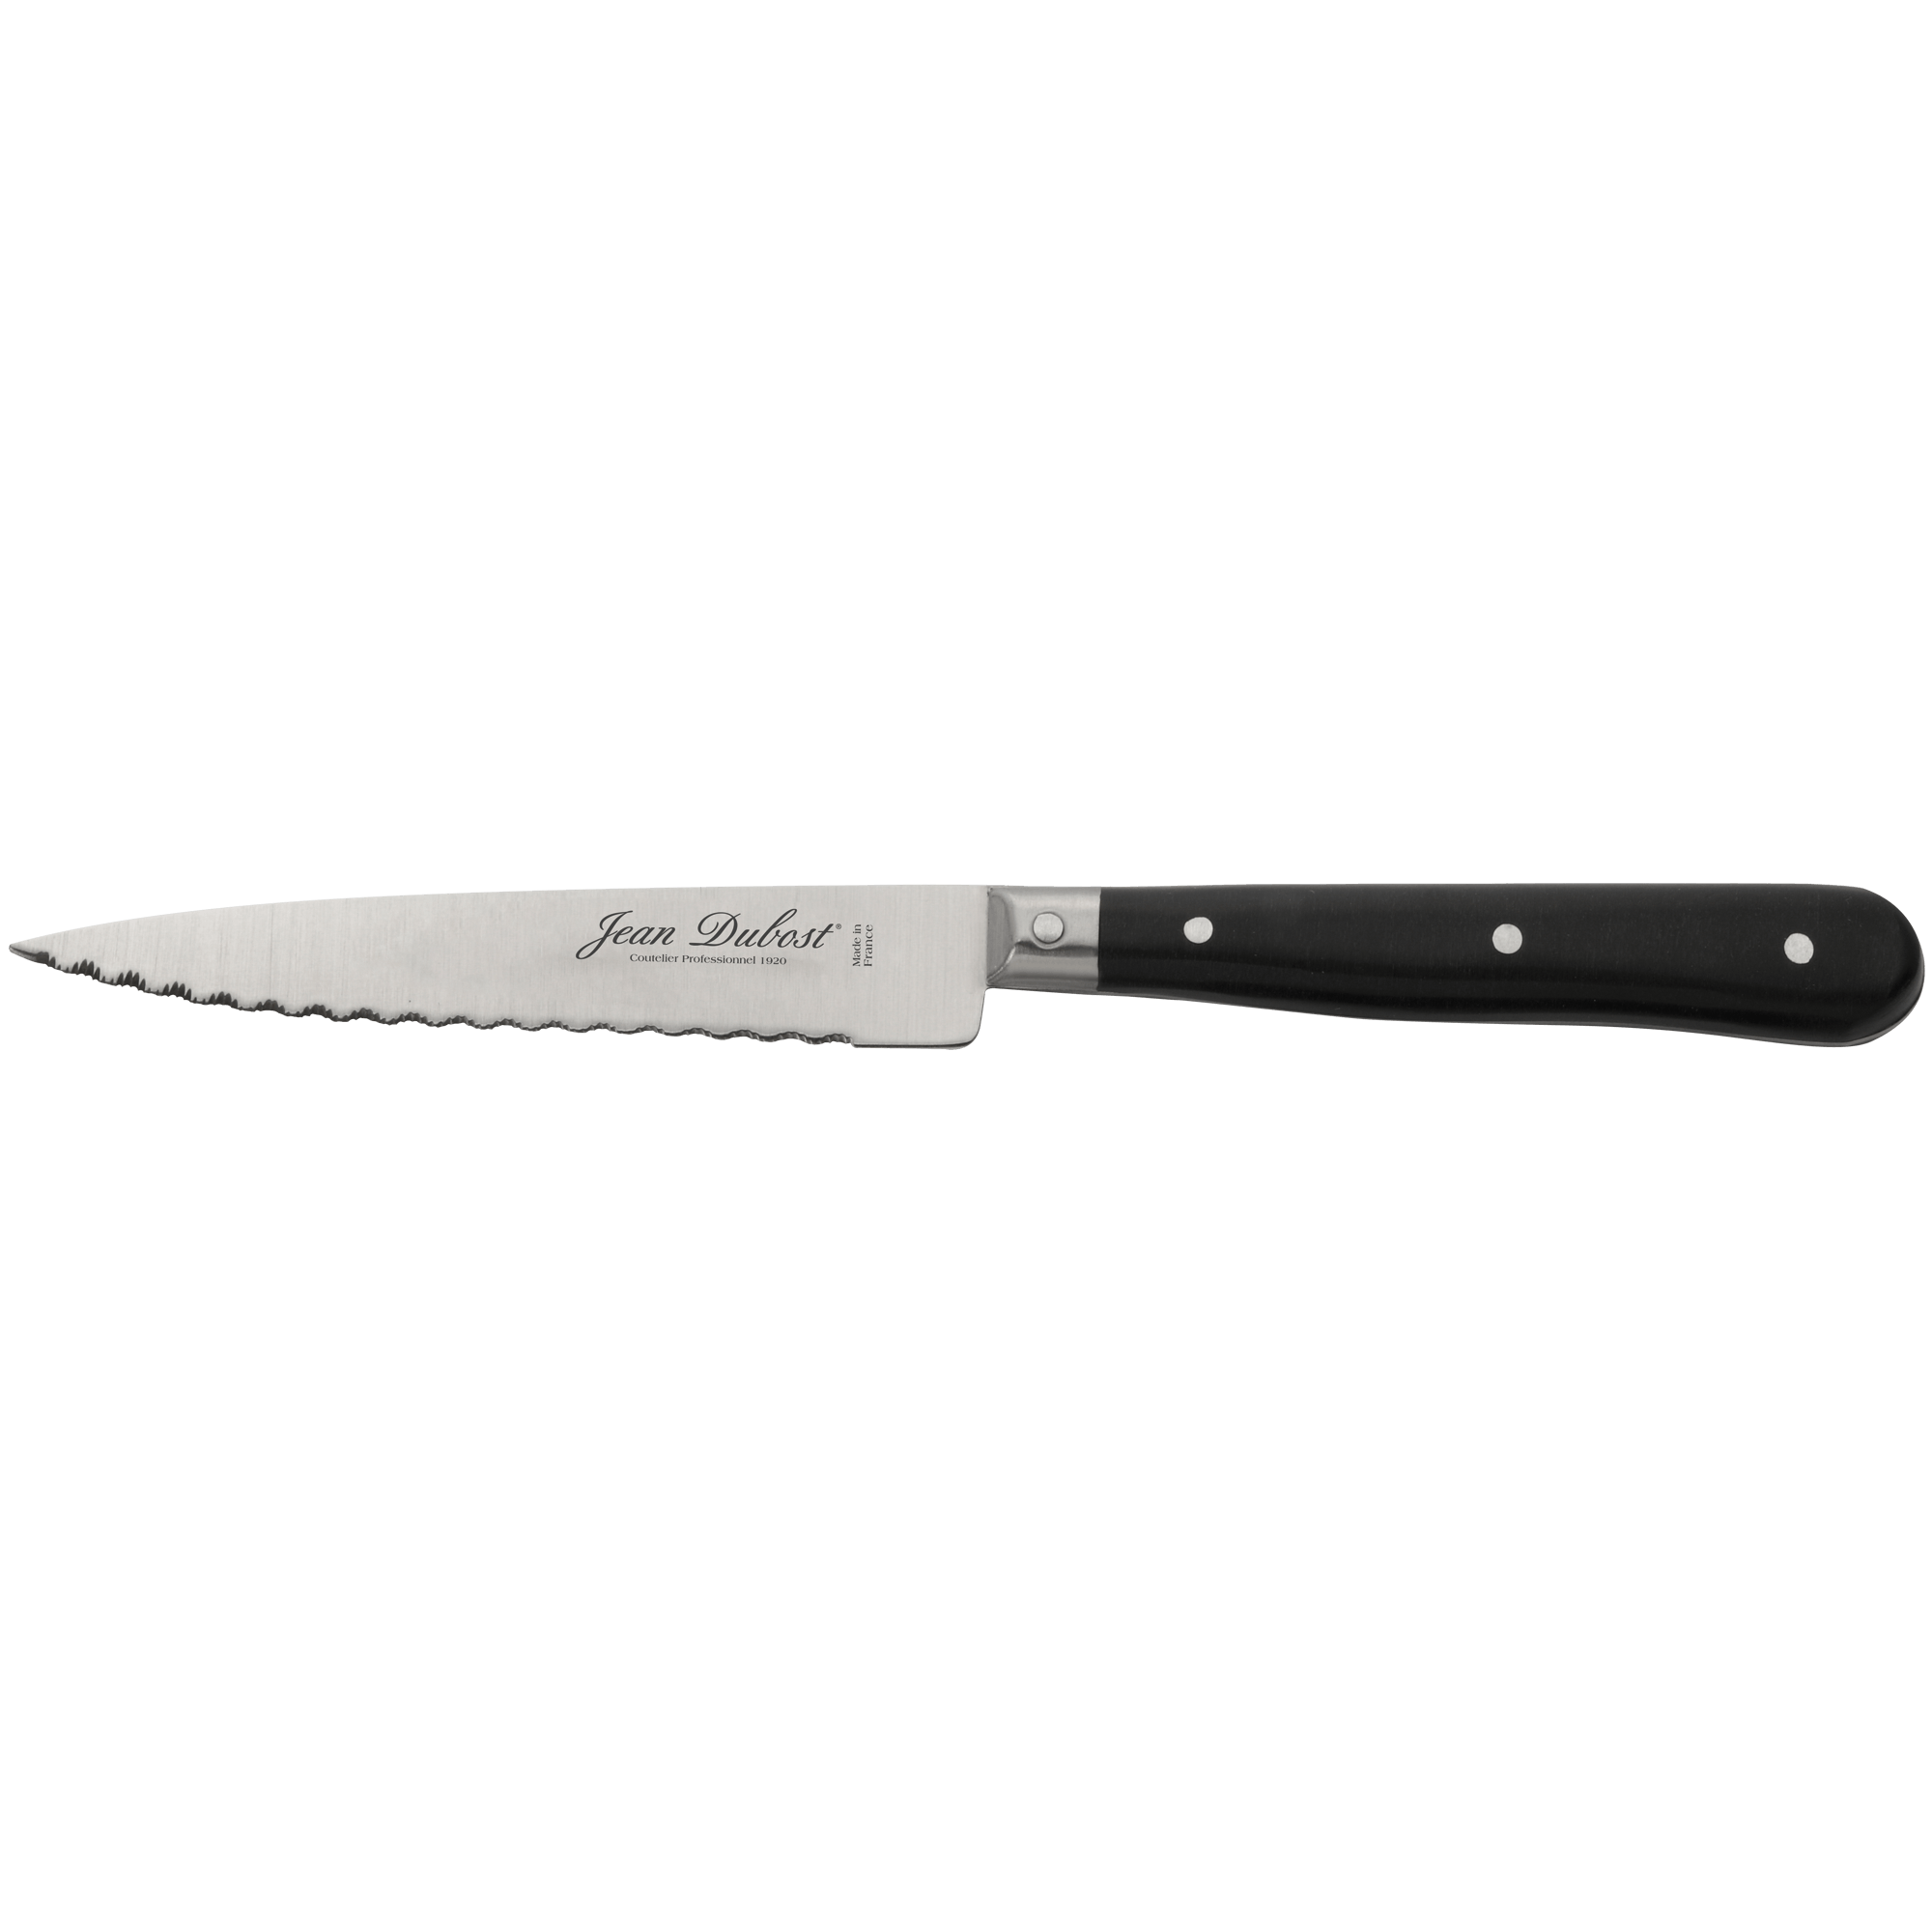 Couteau à steak classic Nogent manche noir